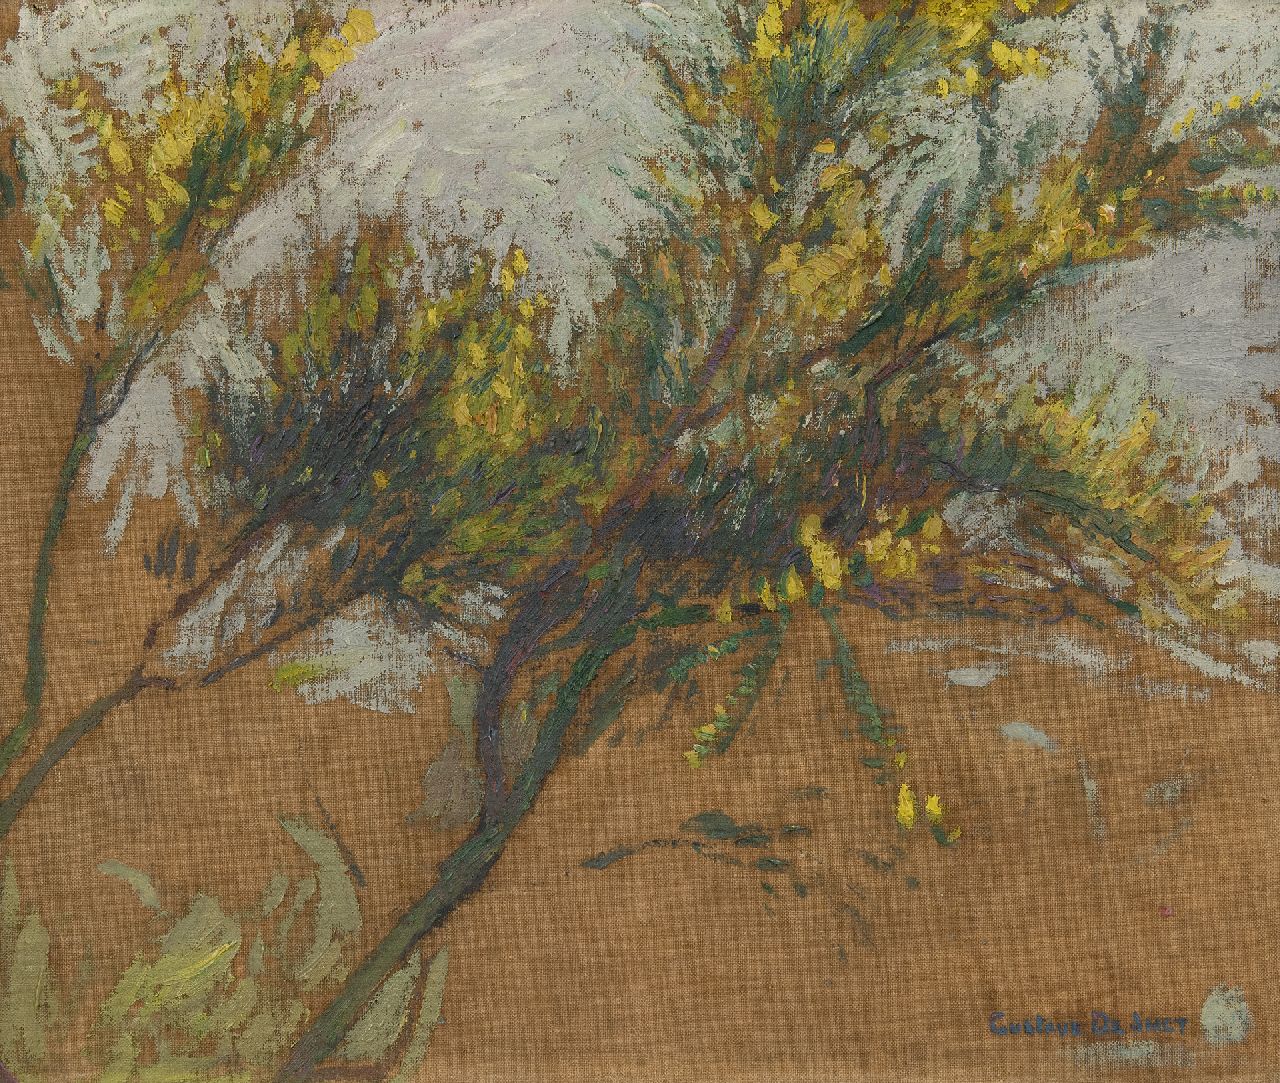 Smet G. de | Gustave de Smet | Schilderijen te koop aangeboden | Boomstudie, olieverf op doek 33,2 x 40,0 cm, gesigneerd rechtsonder